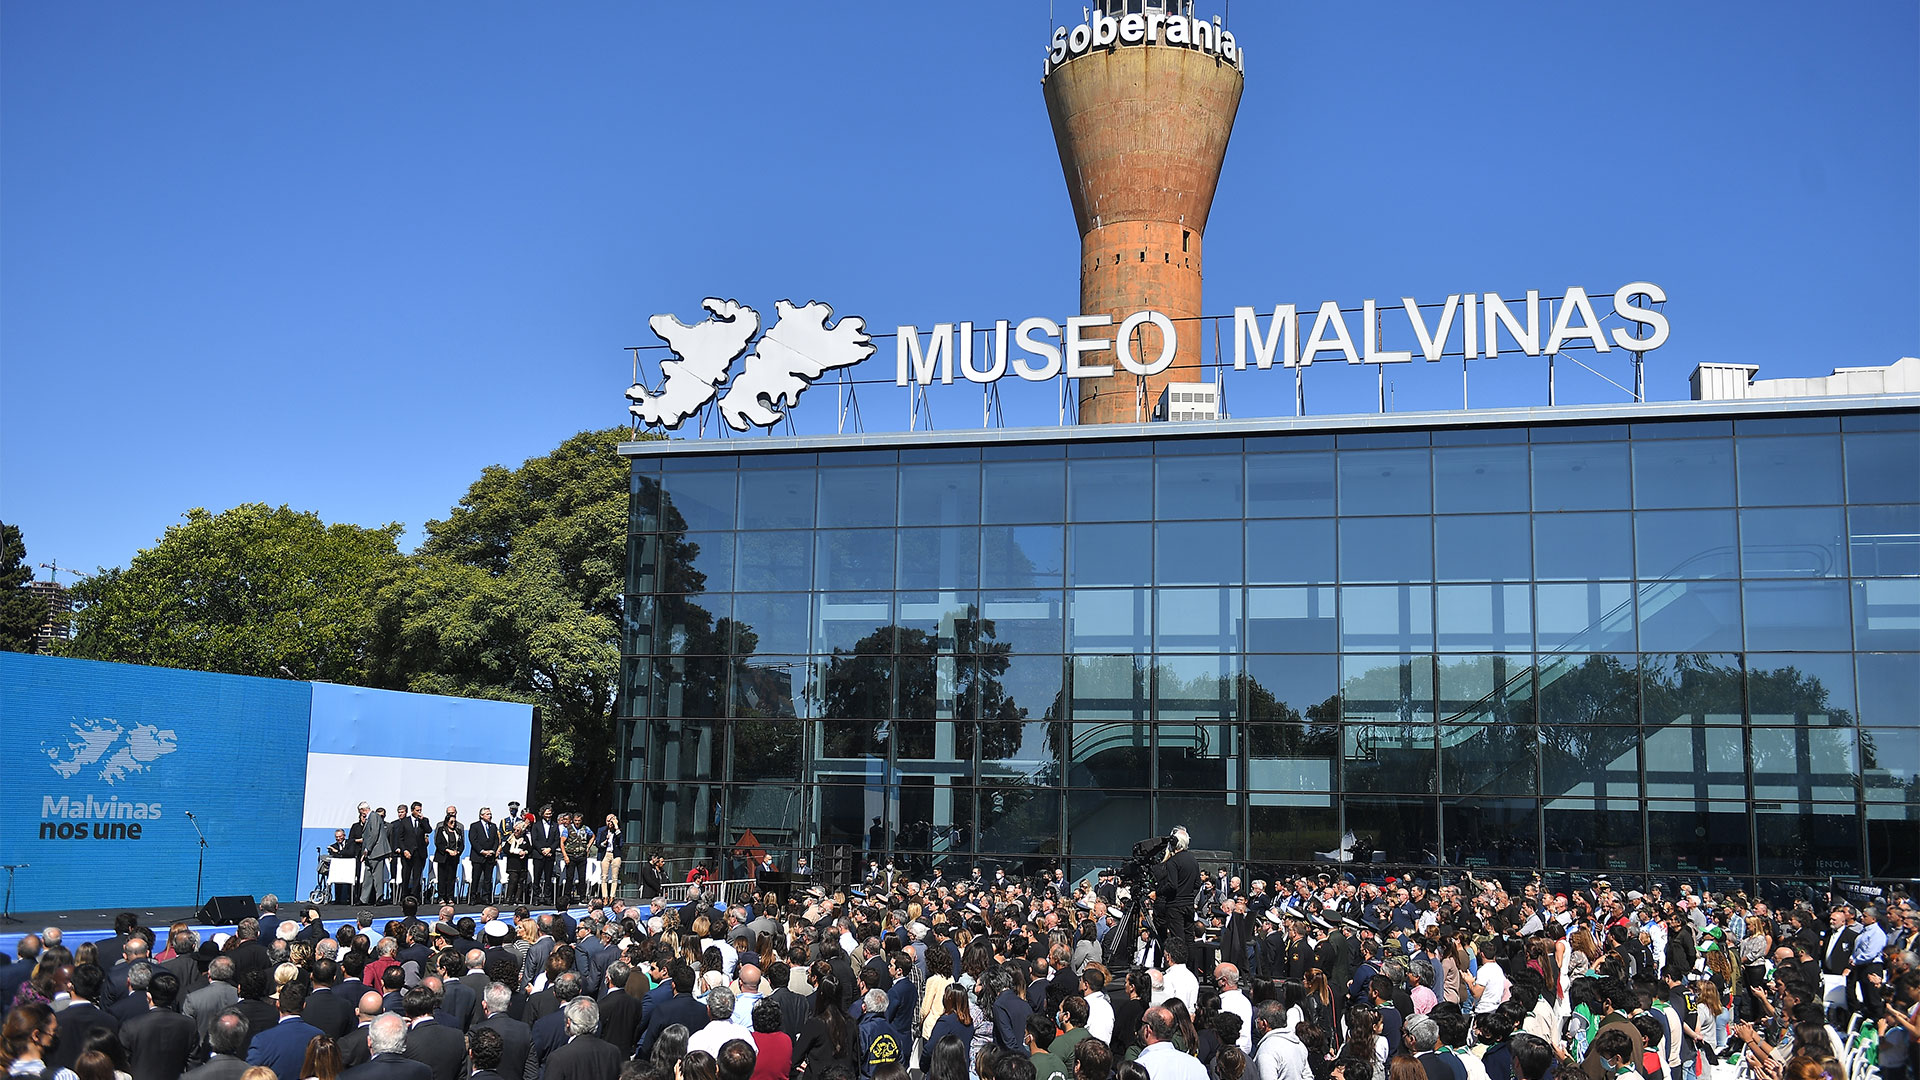 02/04/2022 12:34

El presidente Alberto Fernández encabeza en el Museo Malvinas el acto oficial del Día del Veterano y de los Caídos en la Guerra de Malvinas, al cumplirse hoy el 40° aniversario del inicio del conflicto bélico. (Télam)